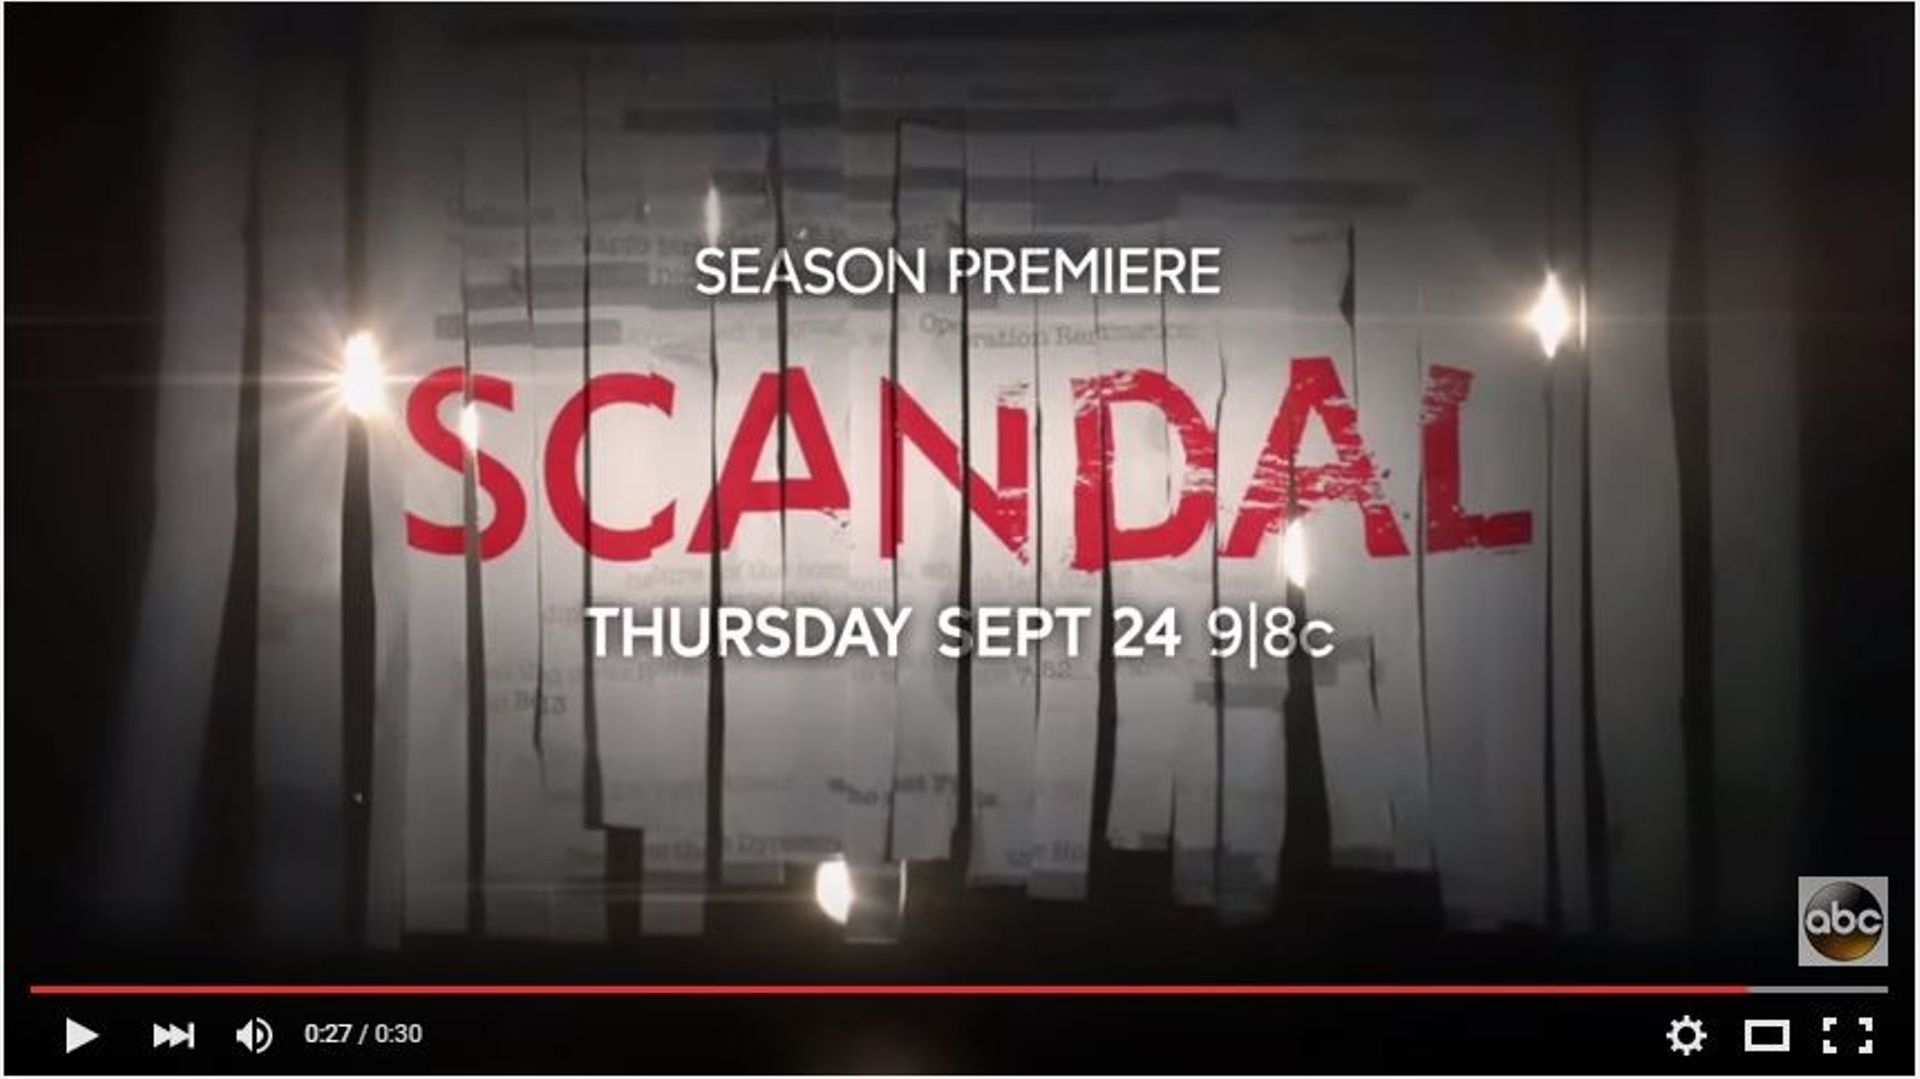 La bande-annonce de la saison 5 de "Scandal" met l'eau à la bouche